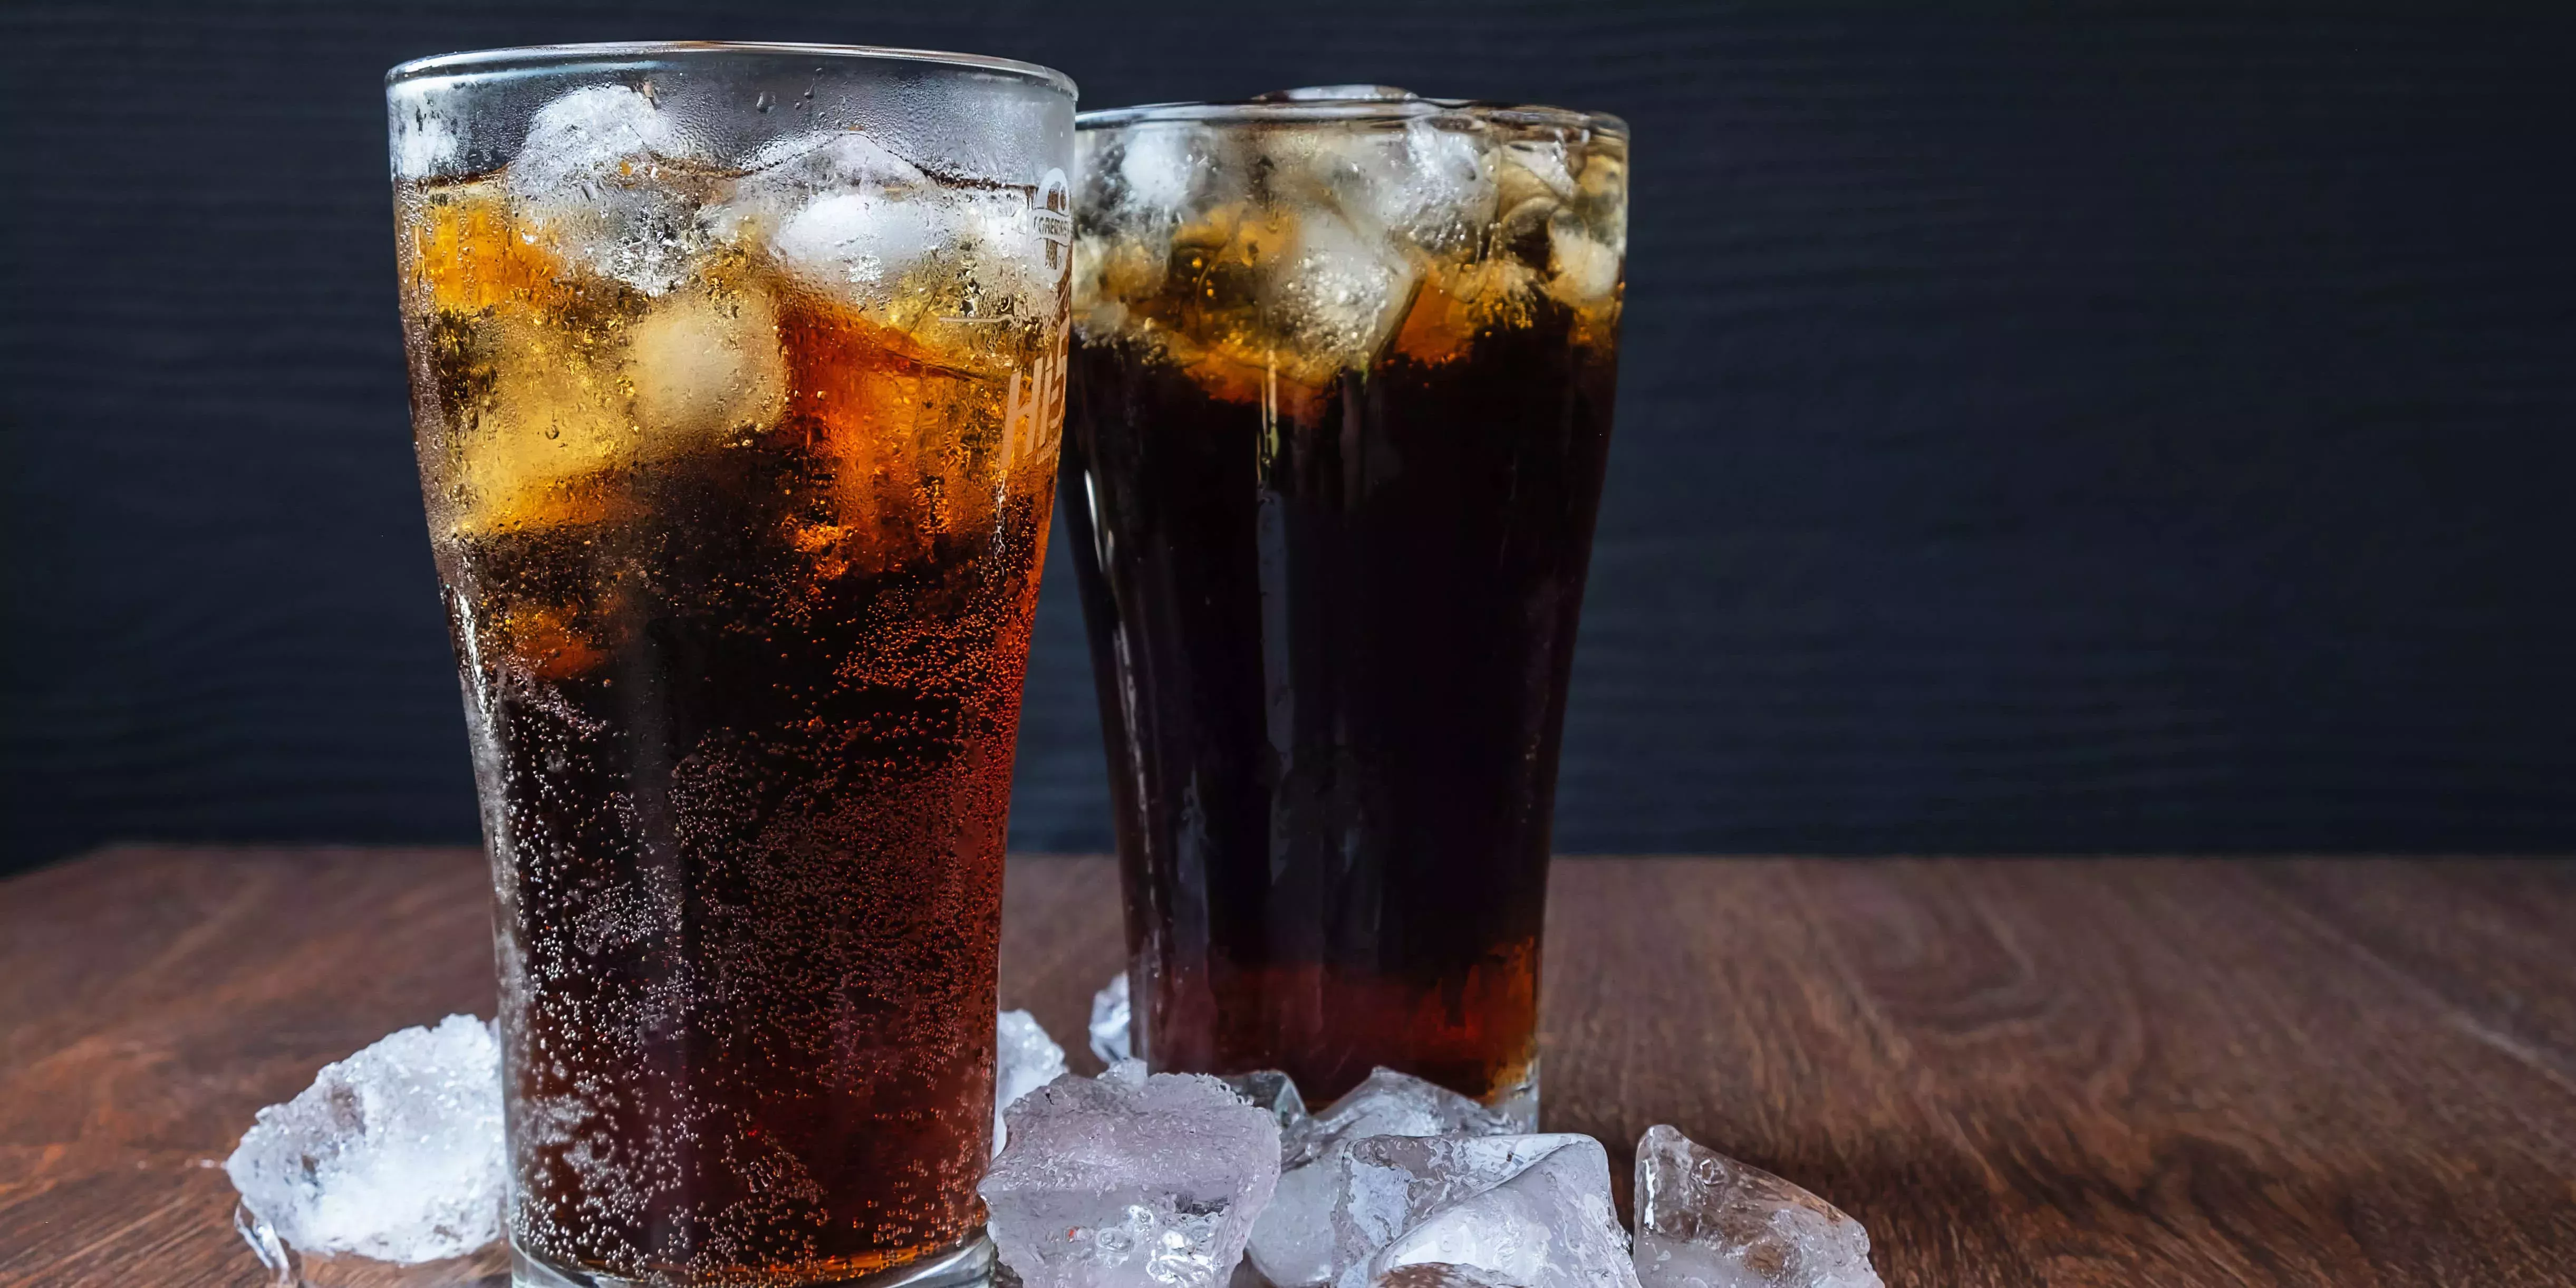 La receta de la 'Coca-Cola saludable' que se hace viral en TikTok mancha y erosiona más los dientes que la Coca-Cola, según los dentistas